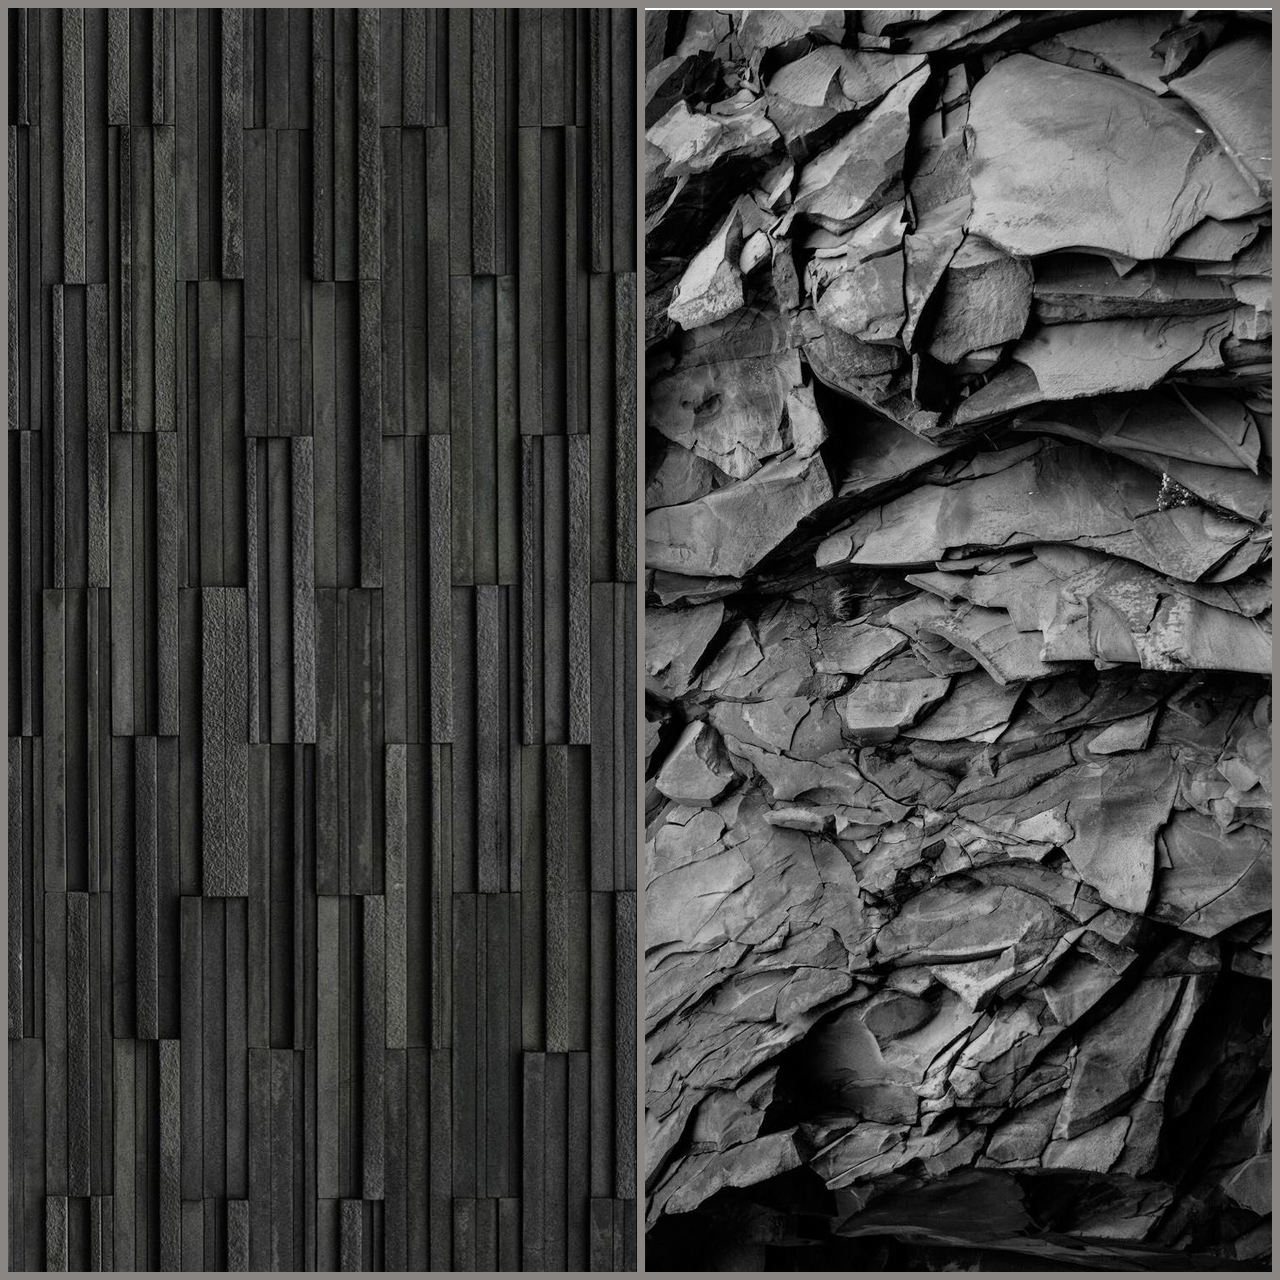 Hình nền hoàn hảo về màu đen cho màn hình AMOLED - Fptshop.com.vn